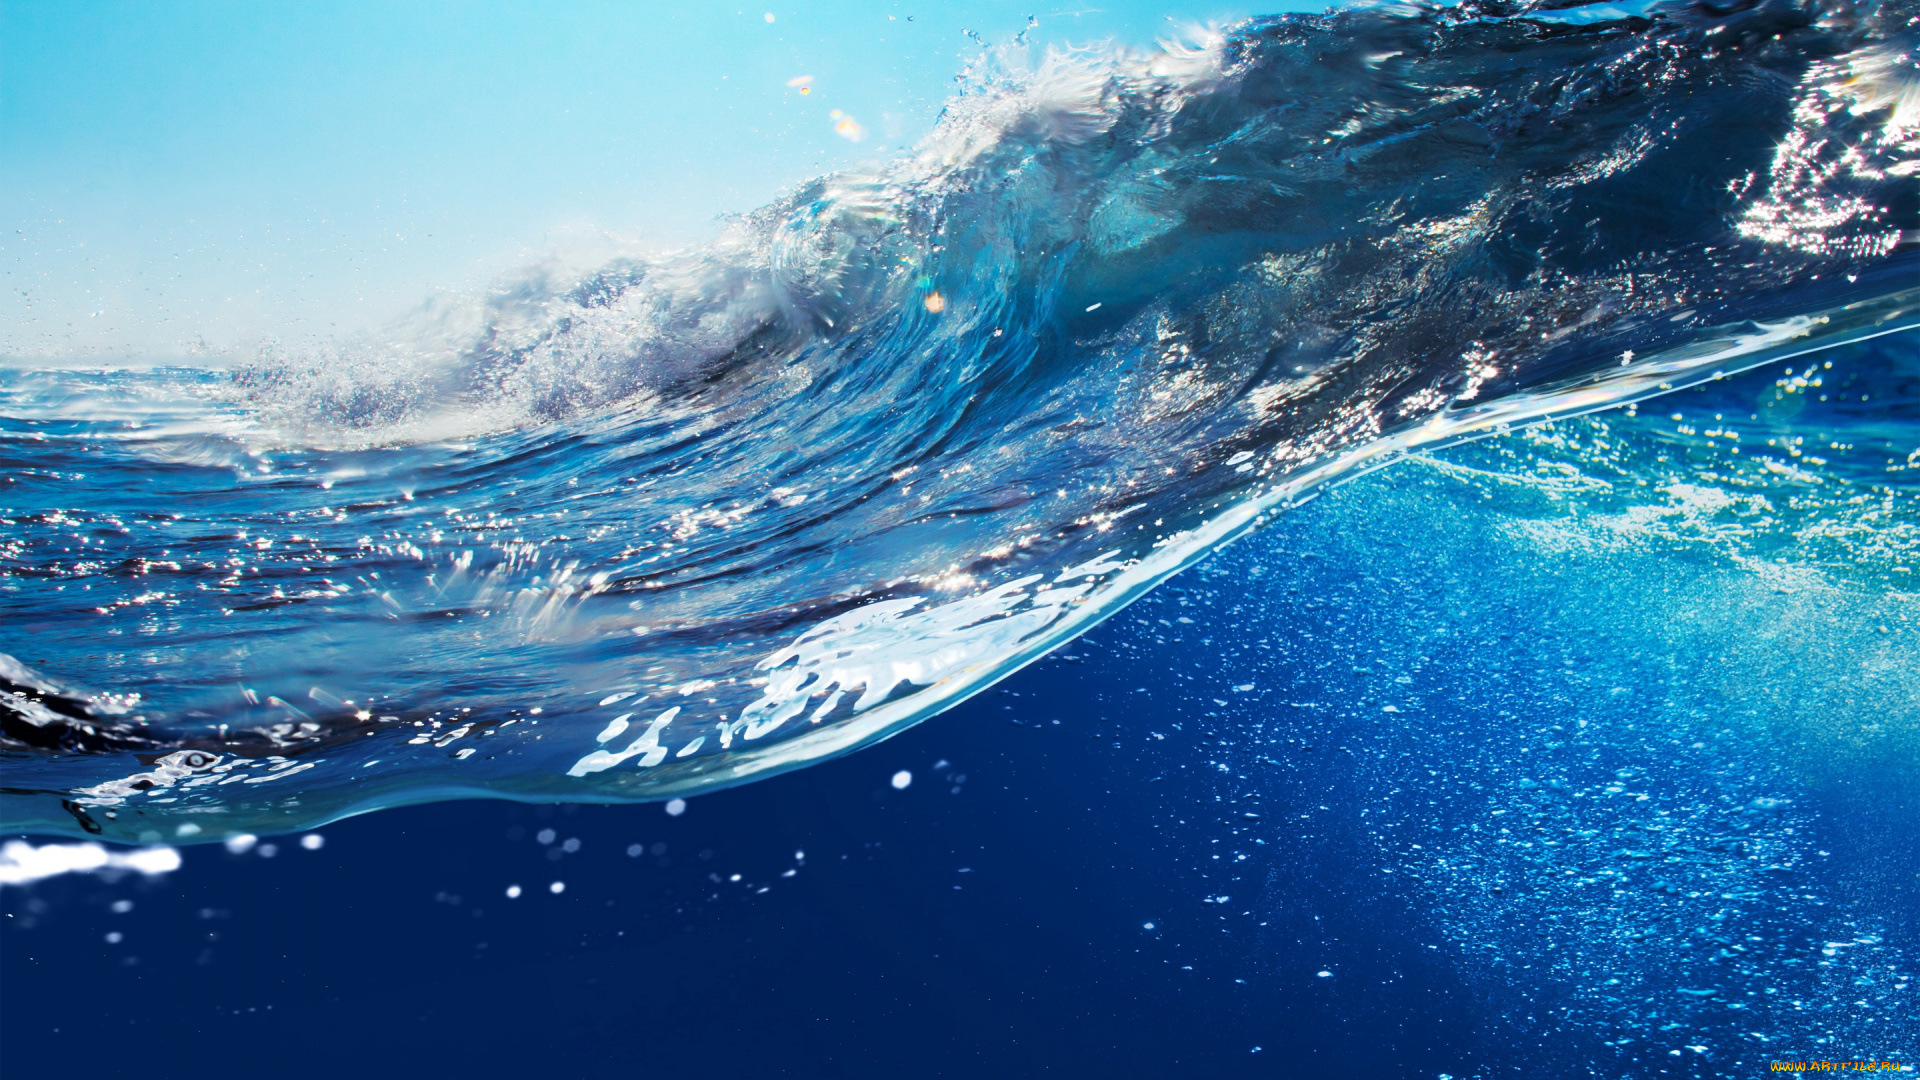 природа, вода, wave, splash, ocean, волна, море, океан, sky, sea, blue